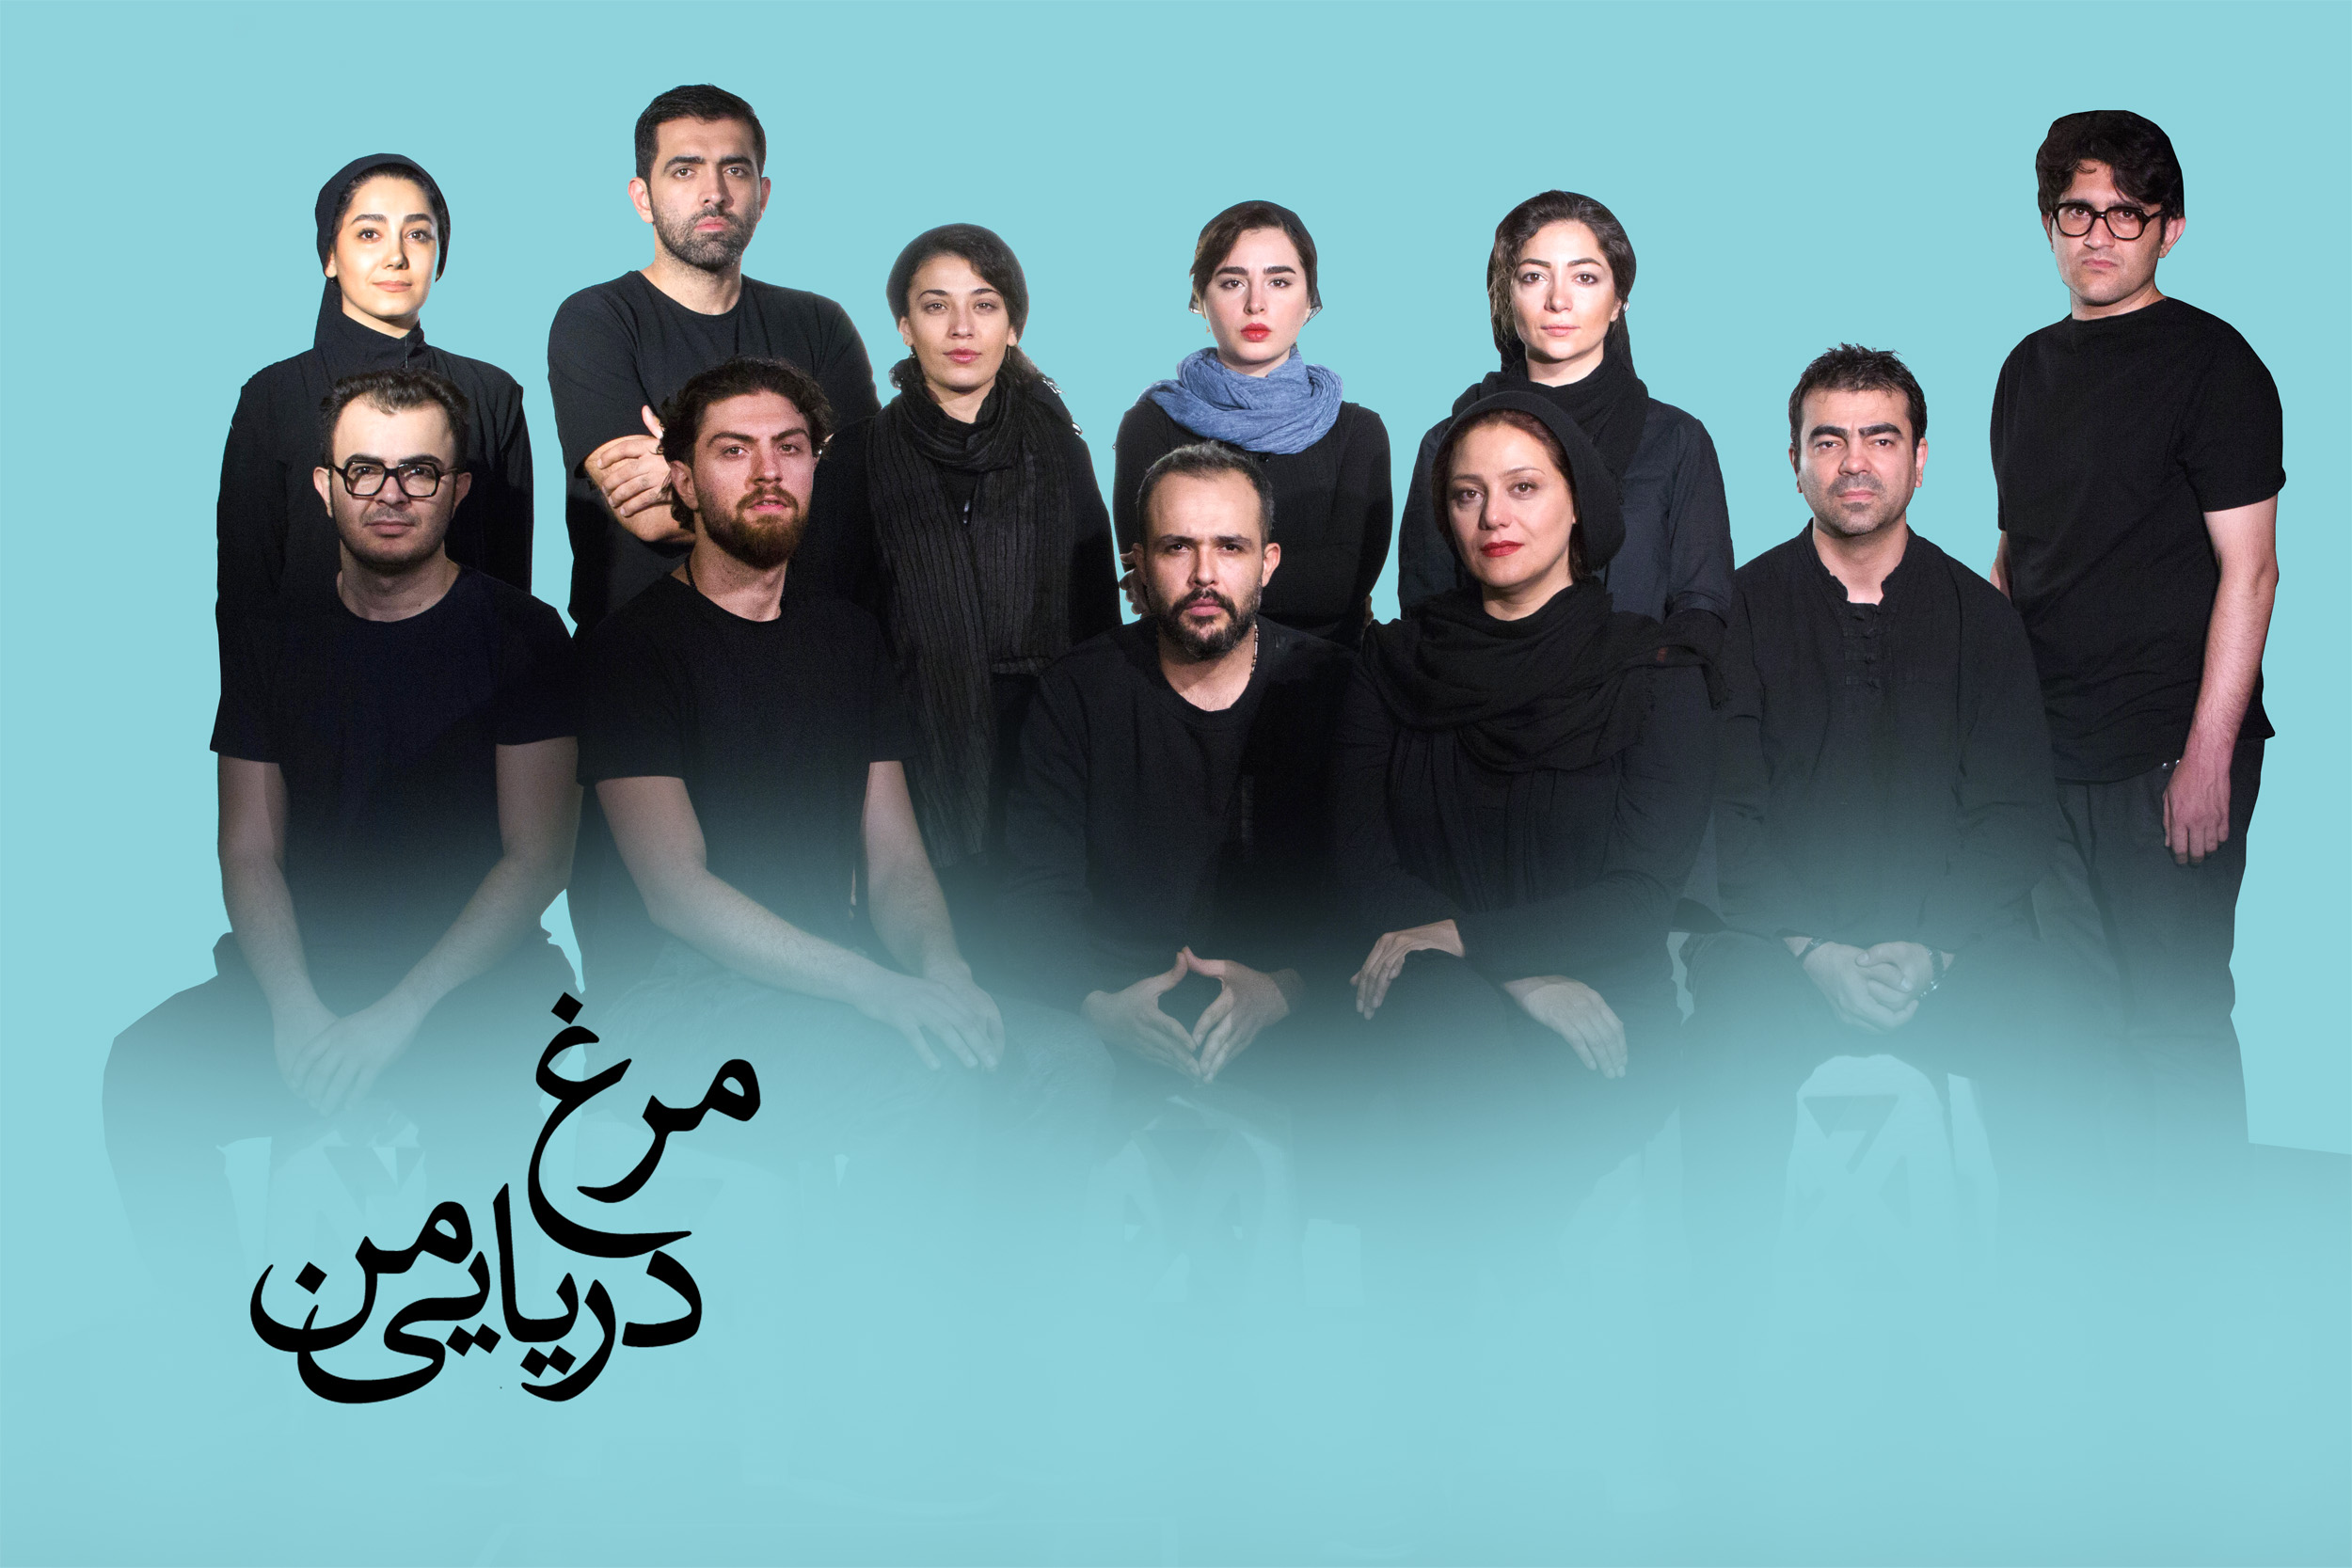 امیرحسین فتحی به نمایش جدید "کیومرث مرادی" پیوست